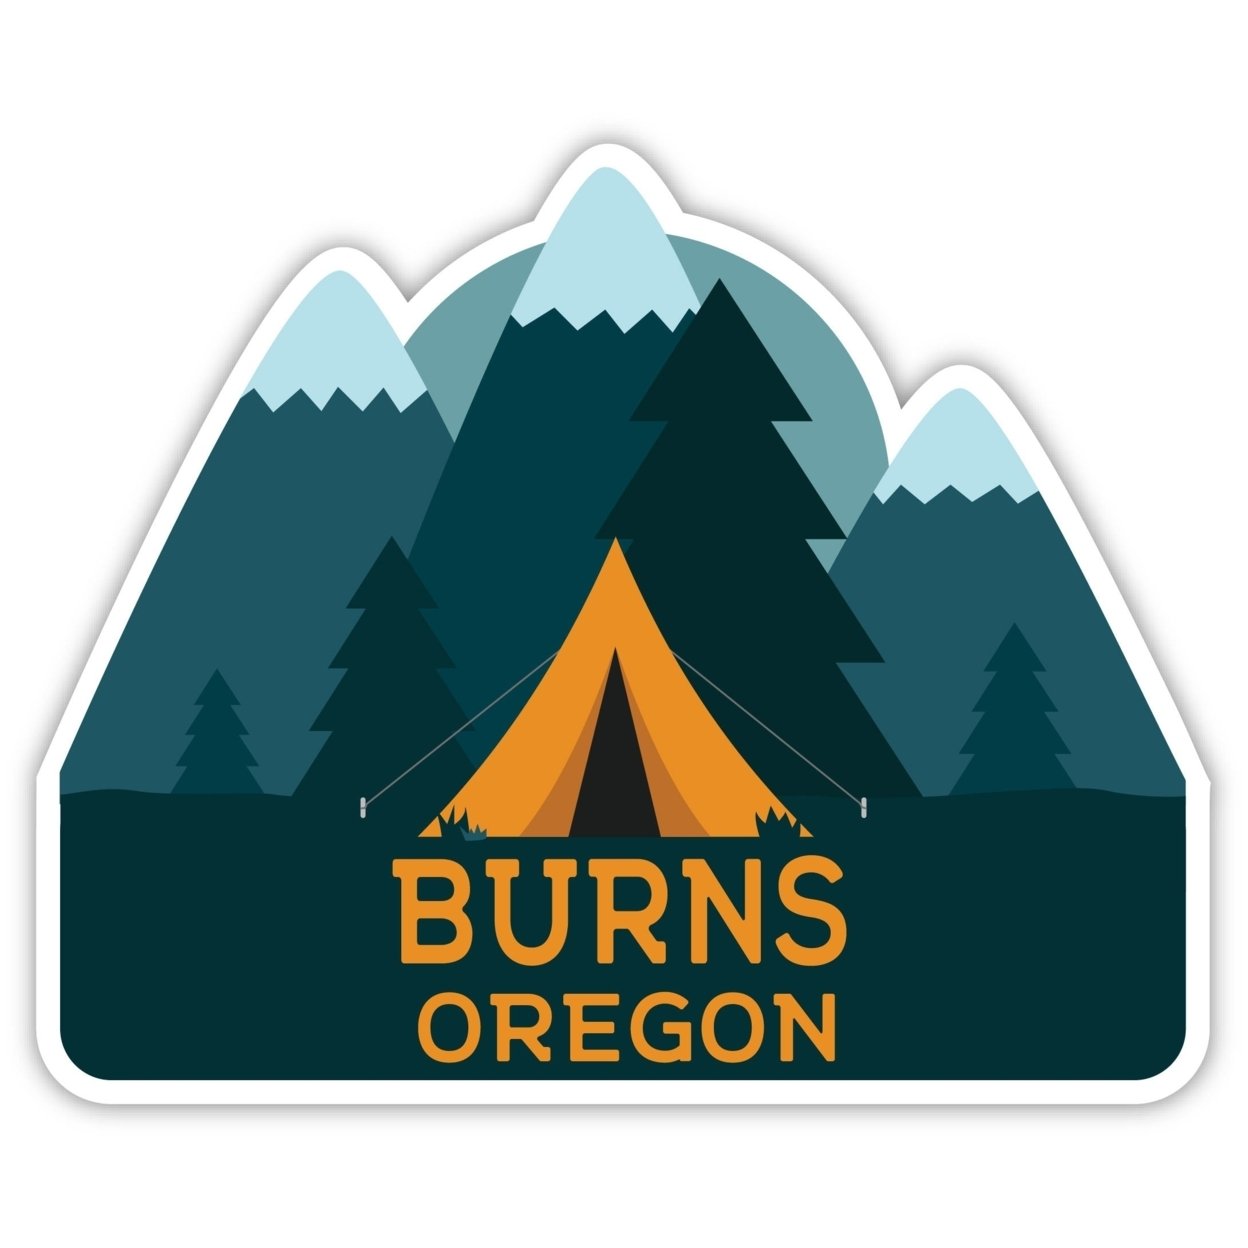 Burns Oregon Souvenir Decorative Stickers (Choose Theme And Size) - Single Unit, 10-Inch, Tent